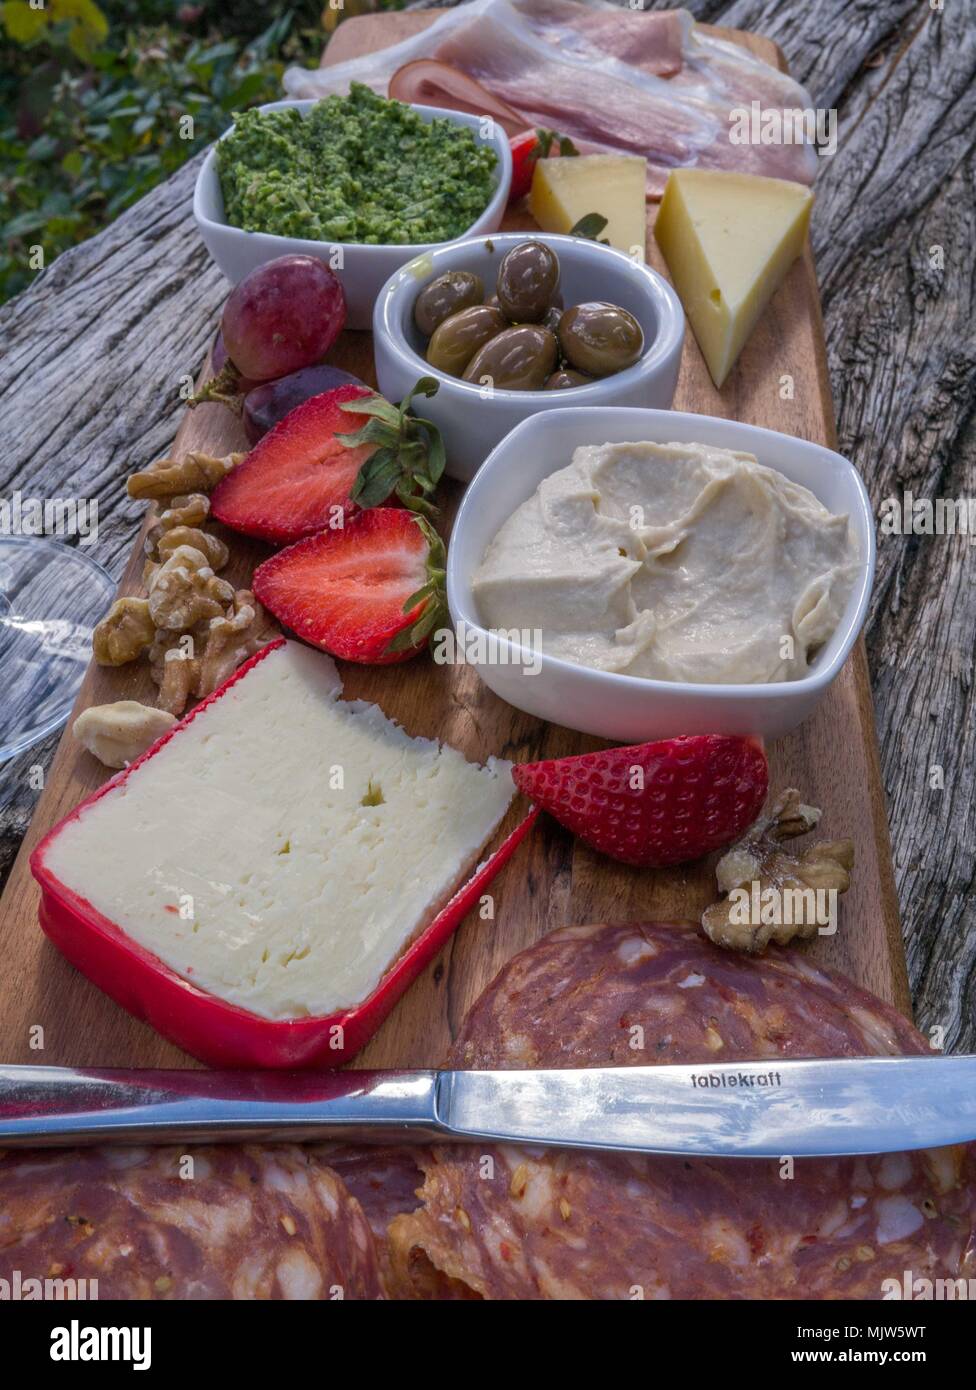 Verkostung Teller mit Käse, Salami, Erdbeeren, Oliven, Nüsse, Humus und Prosciutto auf Holzbrett sitzen auf verwitterte Zaun Geländer. Stockfoto